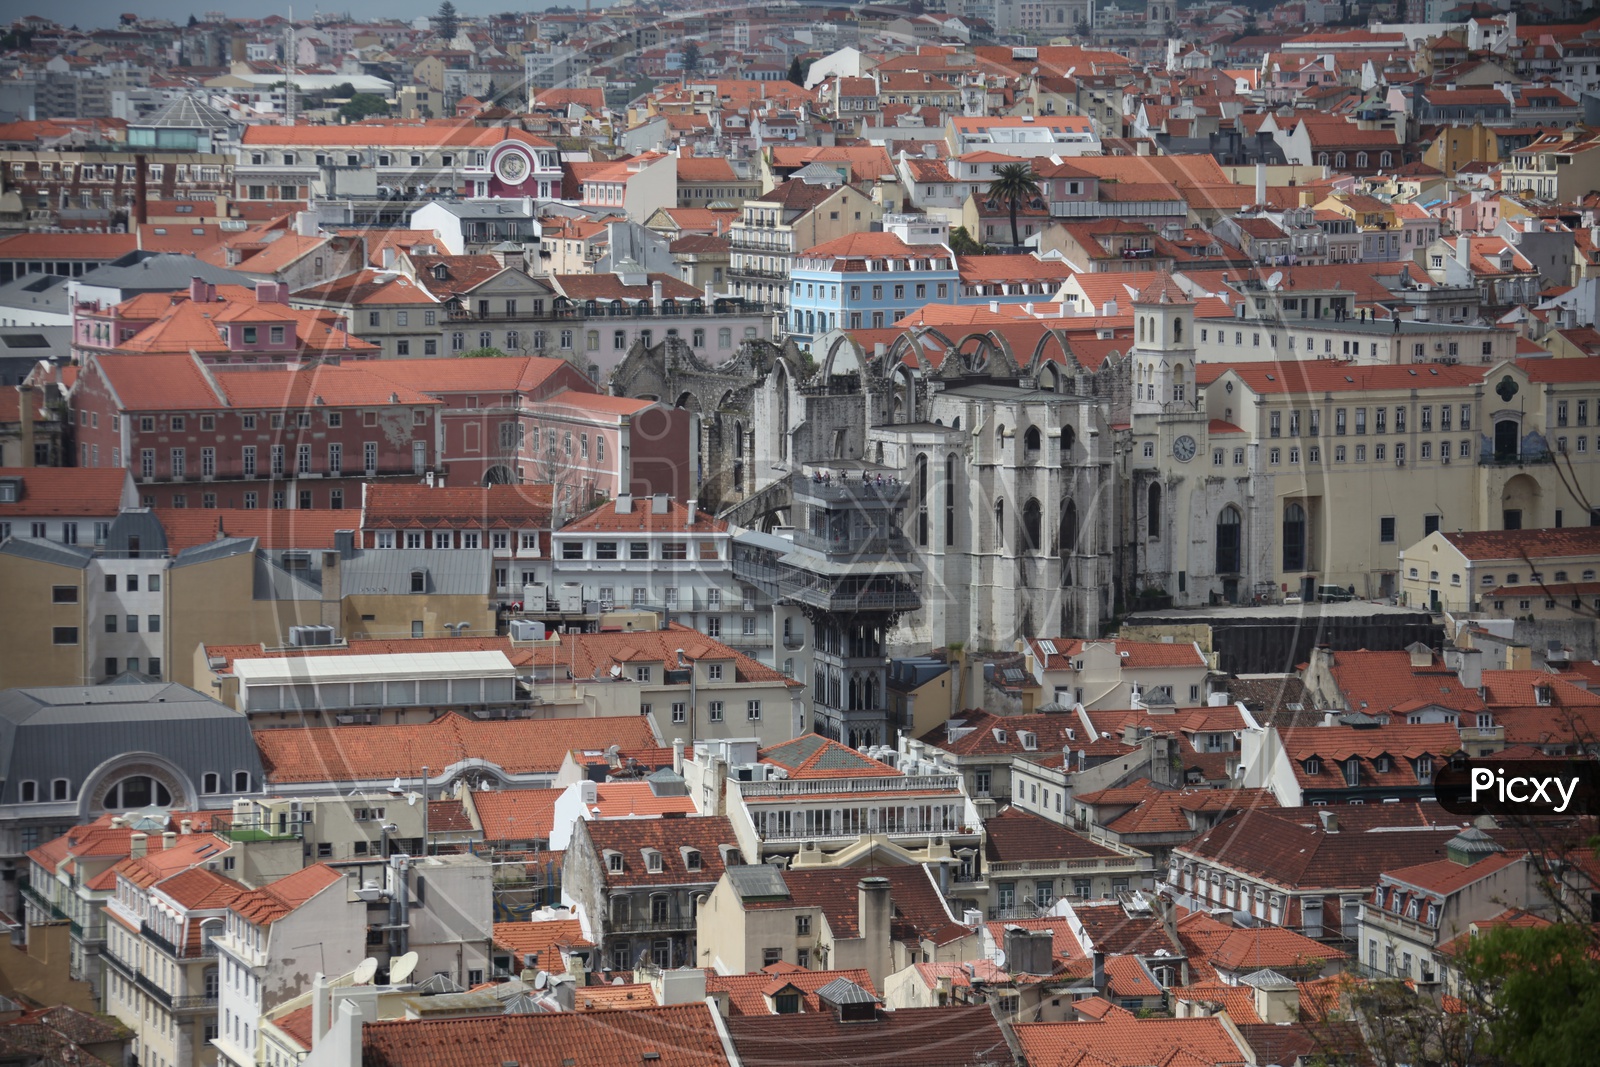 Buildings in Lisbon